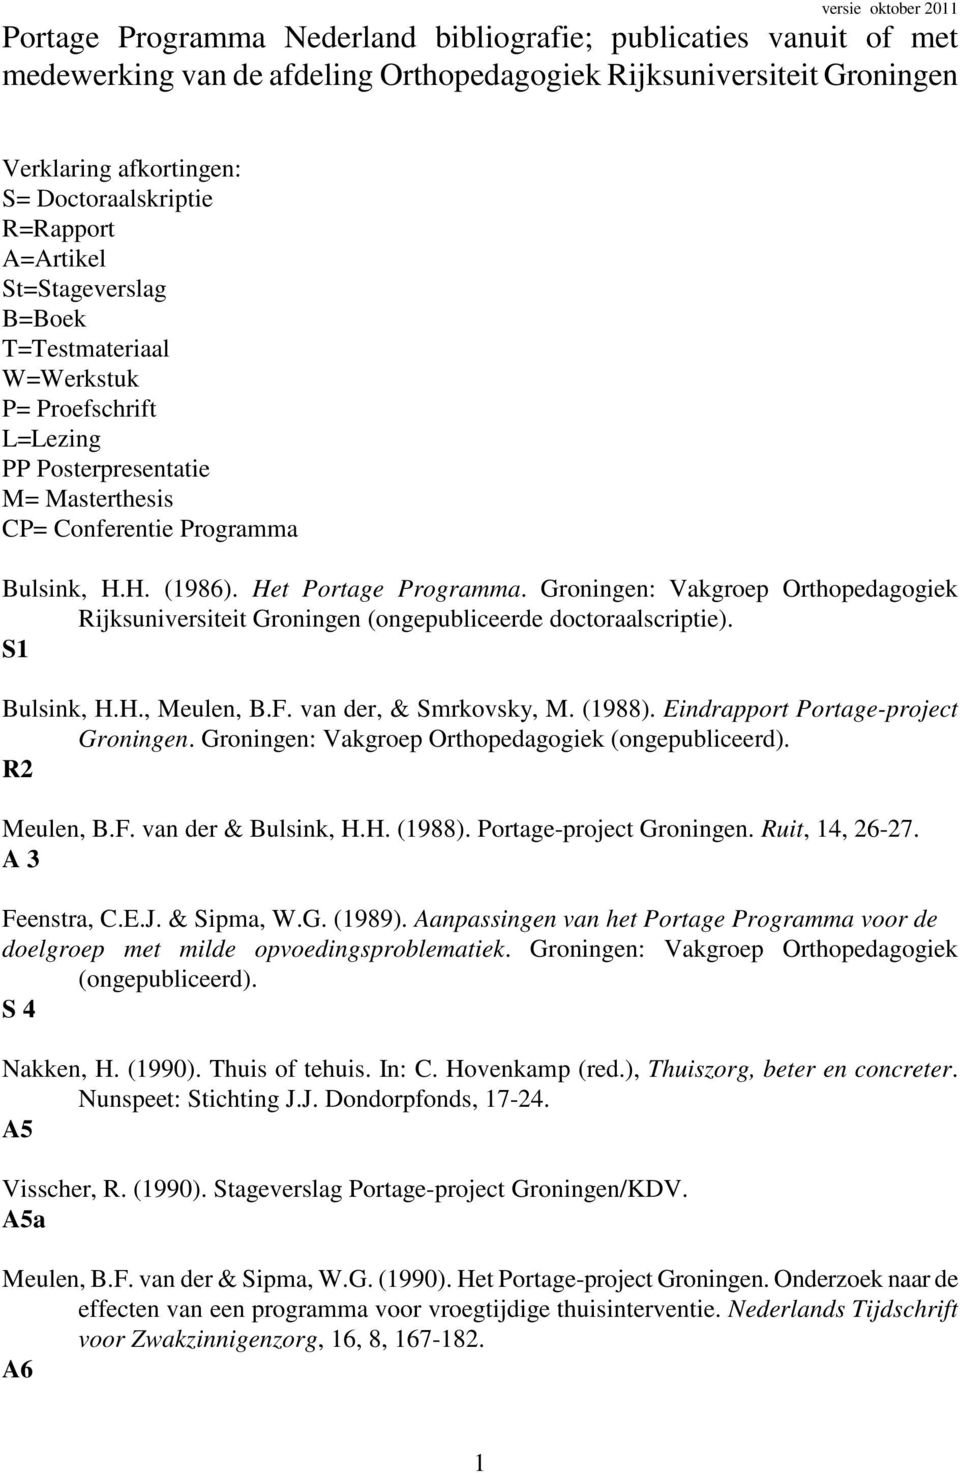 Het Portage Programma. Groningen: Vakgroep Orthopedagogiek Rijksuniversiteit Groningen (ongepubliceerde doctoraalscriptie). S1 Bulsink, H.H., Meulen, B.F. van der, & Smrkovsky, M. (1988).